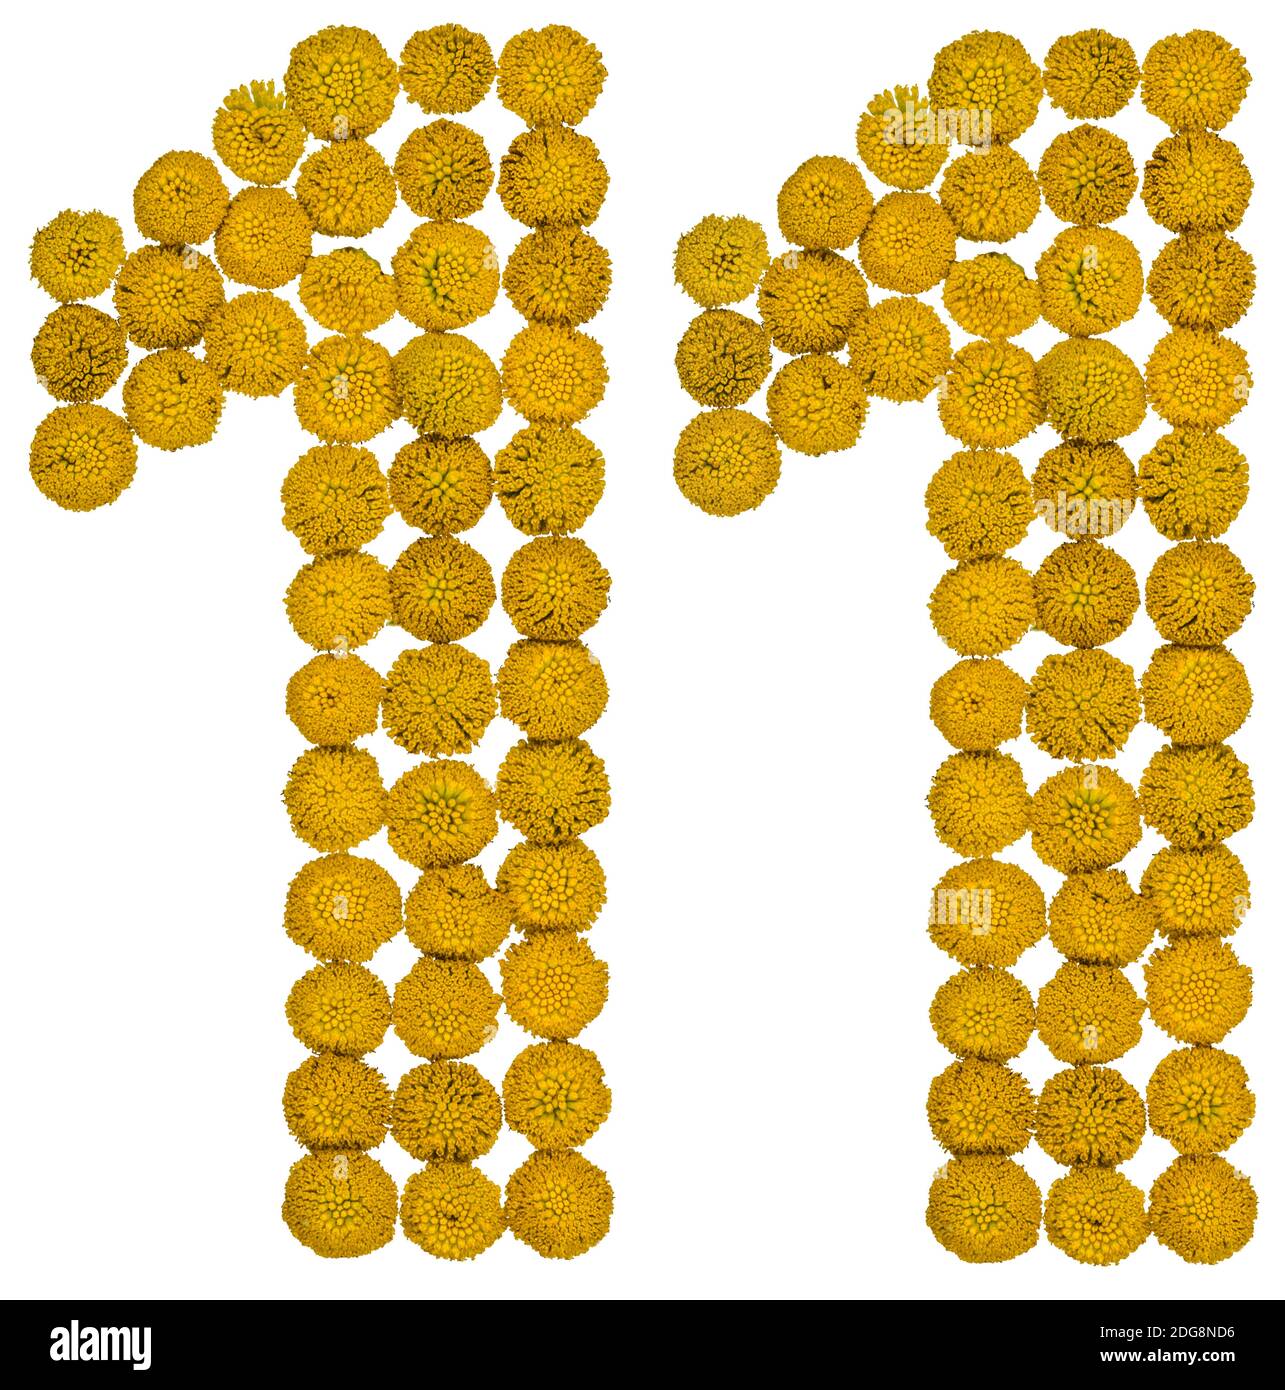 Numero arabo 11, undici, da fiori gialli di tansy, isolati su sfondo bianco Foto Stock